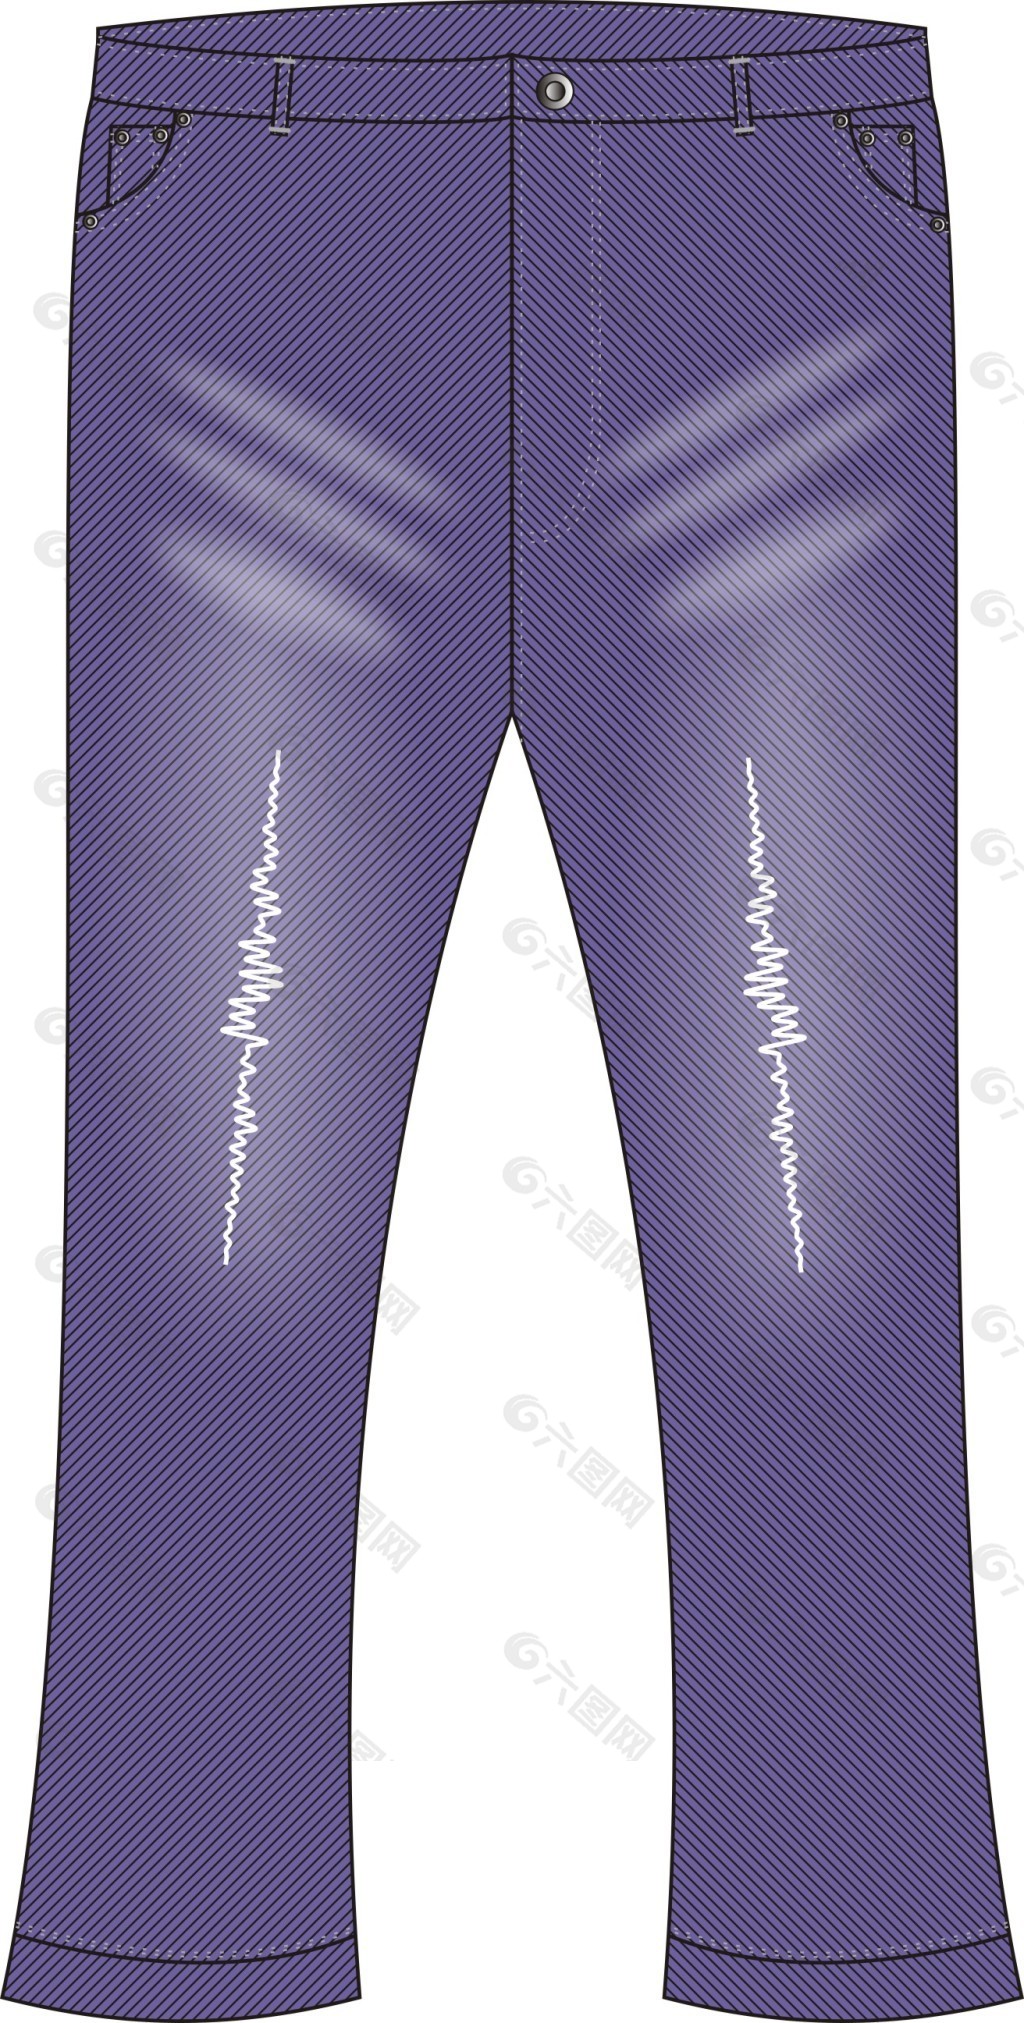 女装休闲裤设计手稿图-女士休闲裤款式效果图-CFW服装设计